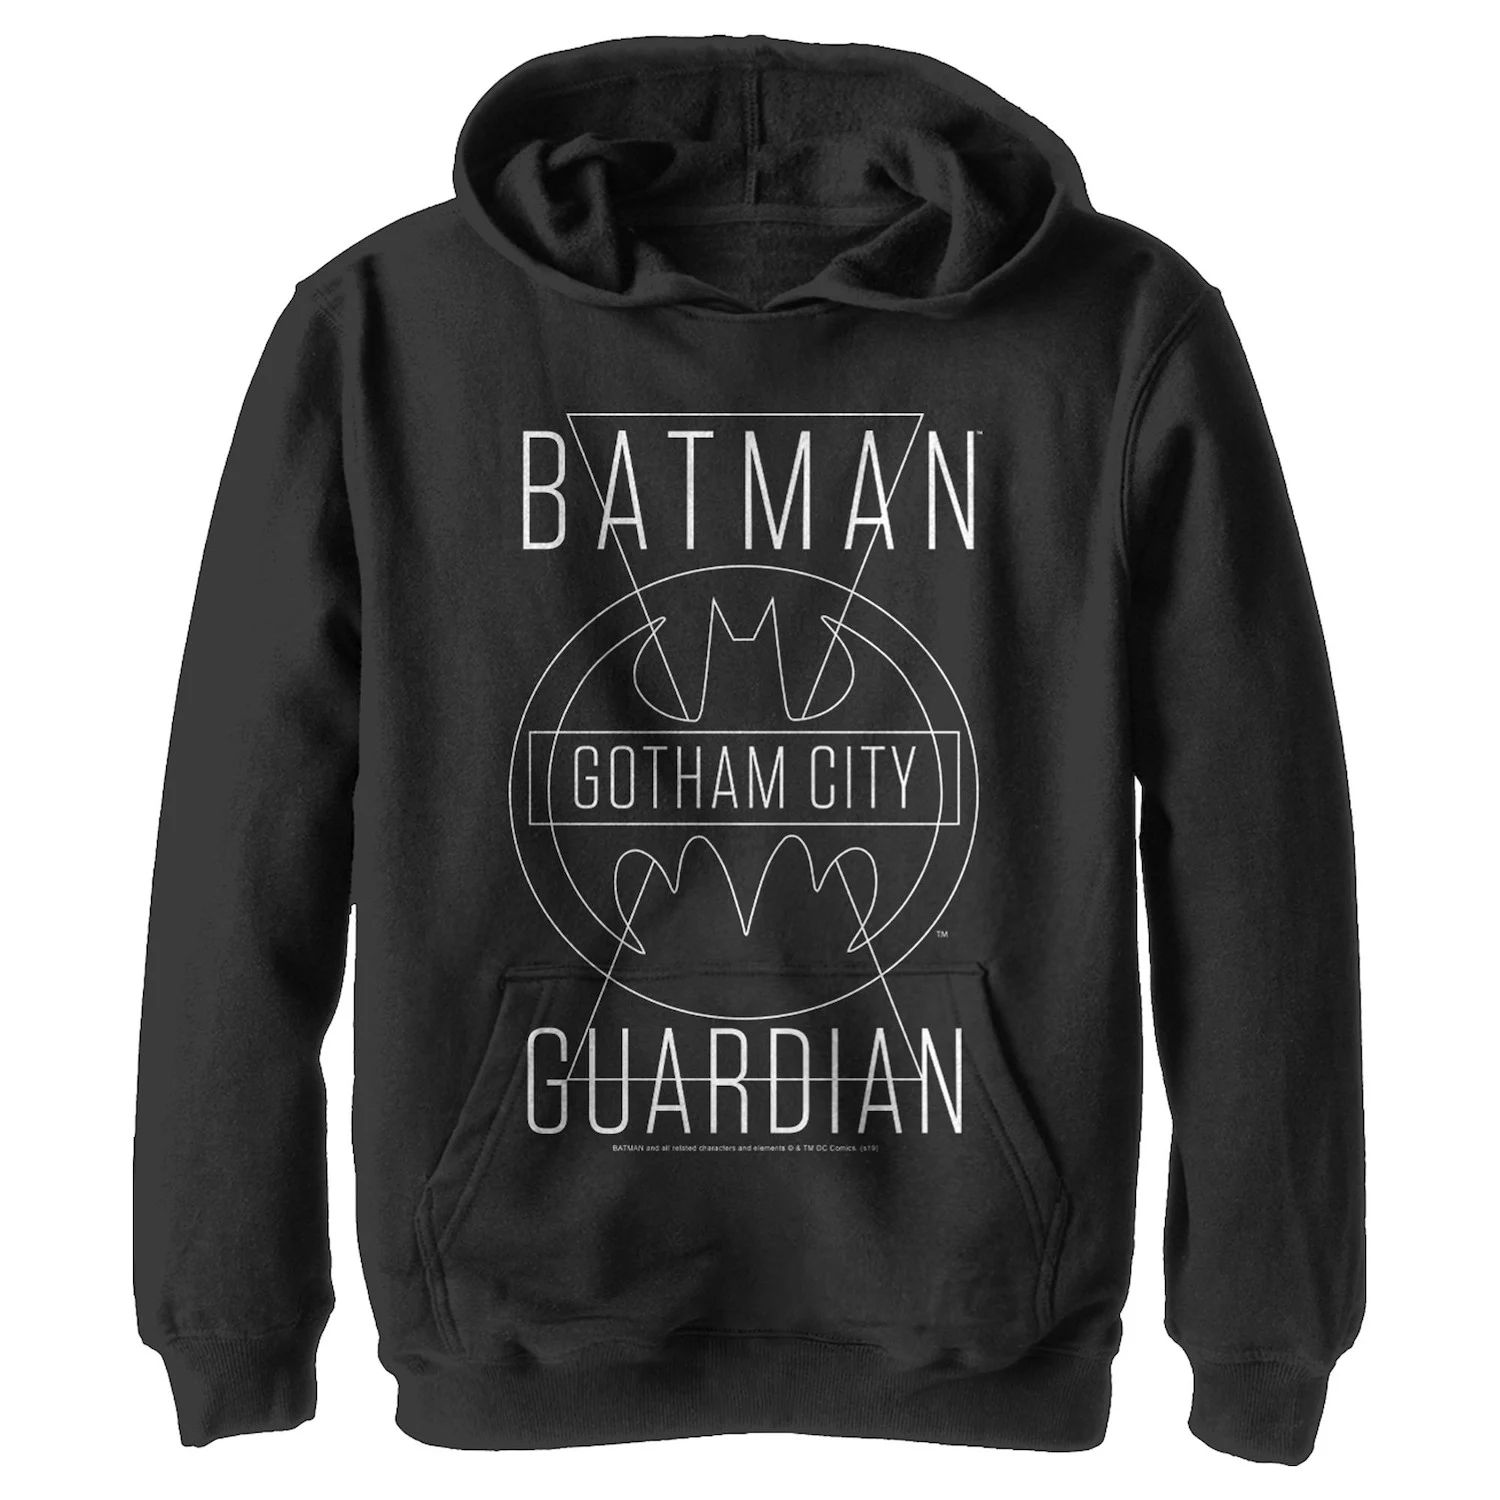 Пуловер с капюшоном и графическим рисунком для мальчиков 8–20 лет из комиксов DC Бэтмен Готэм-сити Guardian с текстовым плакатом DC Comics носки dc comics pixel – cyborg белые